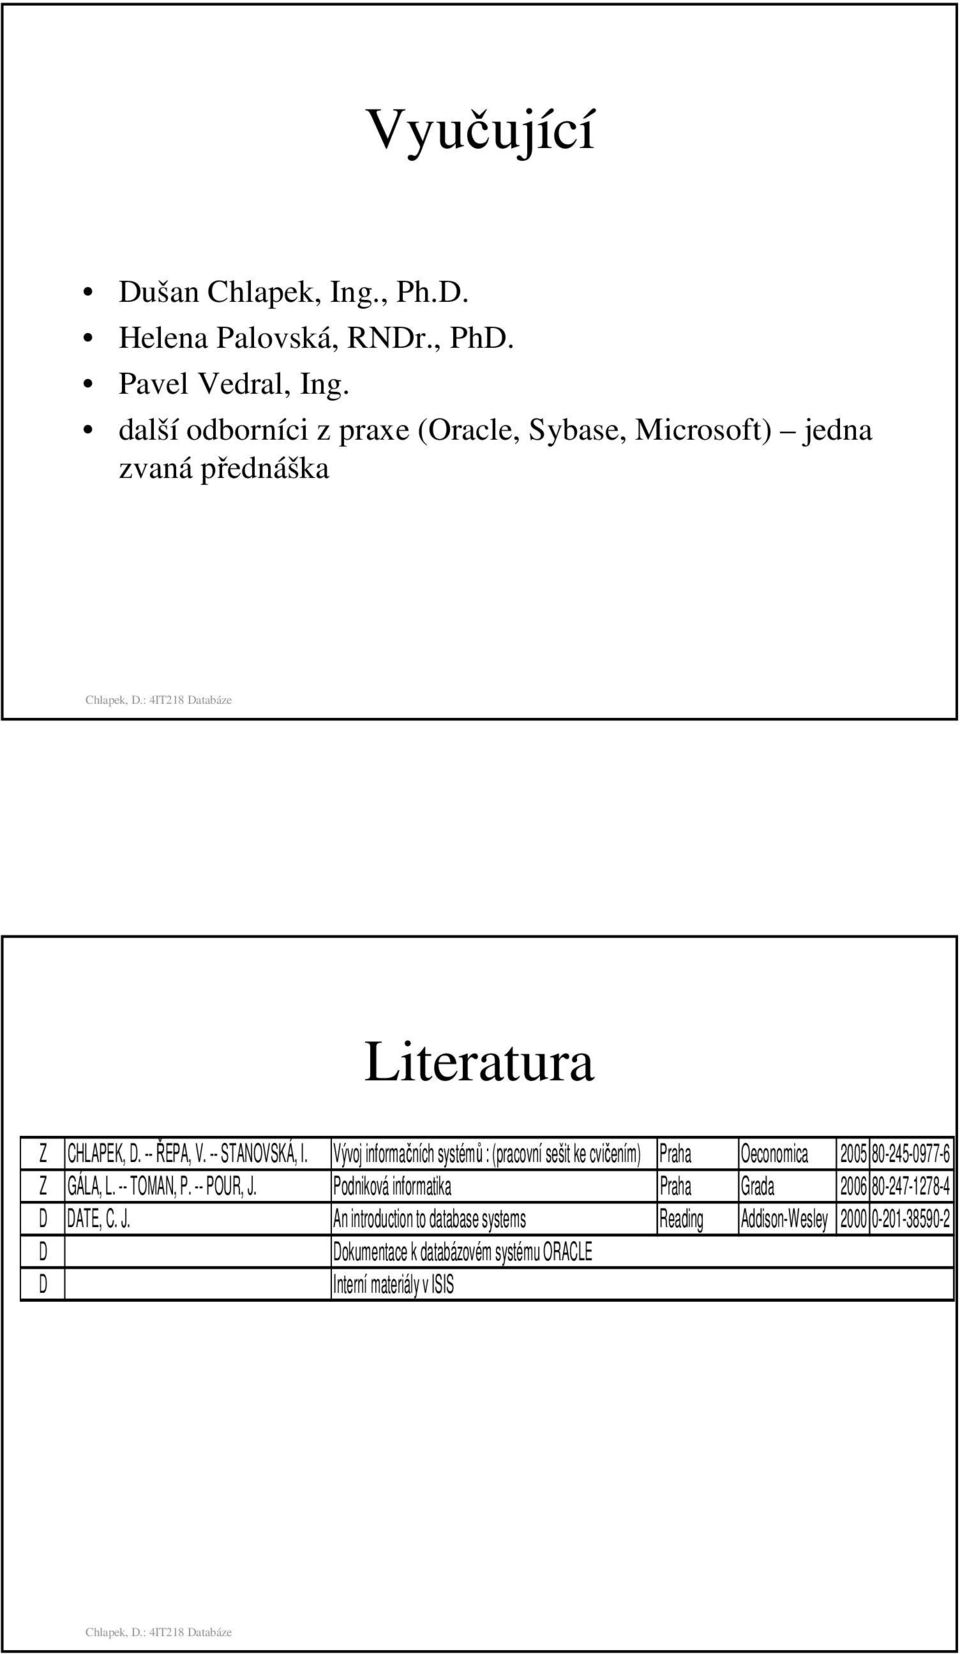 Vývoj informačních systémů : (pracovní sešit ke cvičením) Praha Oeconomica 2005 80-245-0977-6 Z GÁLA, L. -- TOMAN, P. -- POUR, J.